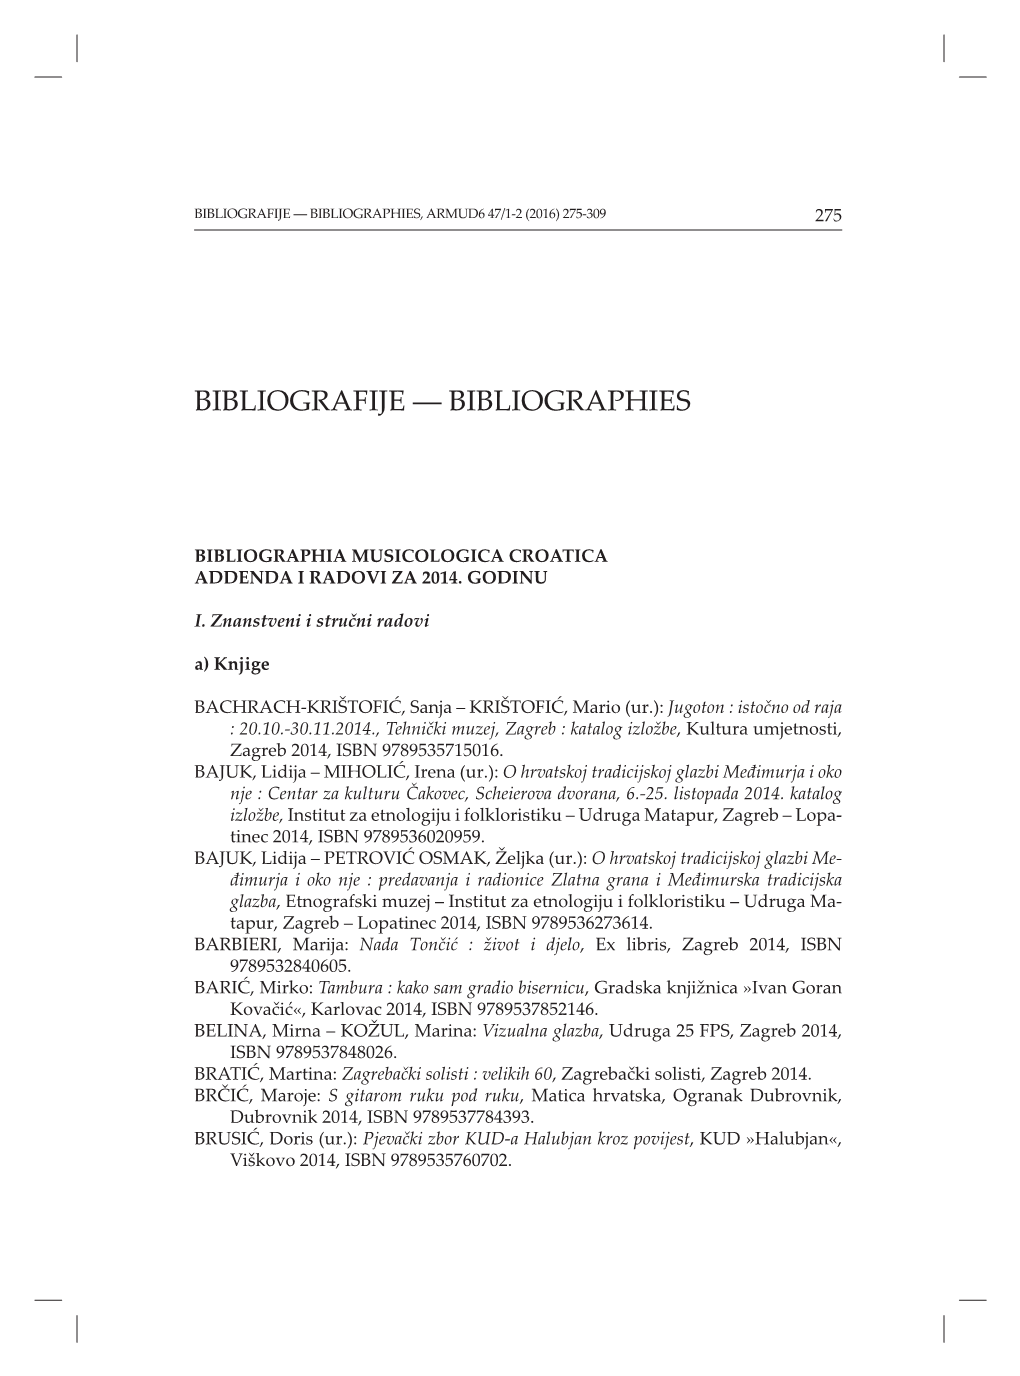 Bibliografije ― Bibliographies, Armud6 47/1-2 (2016) 275-309 275